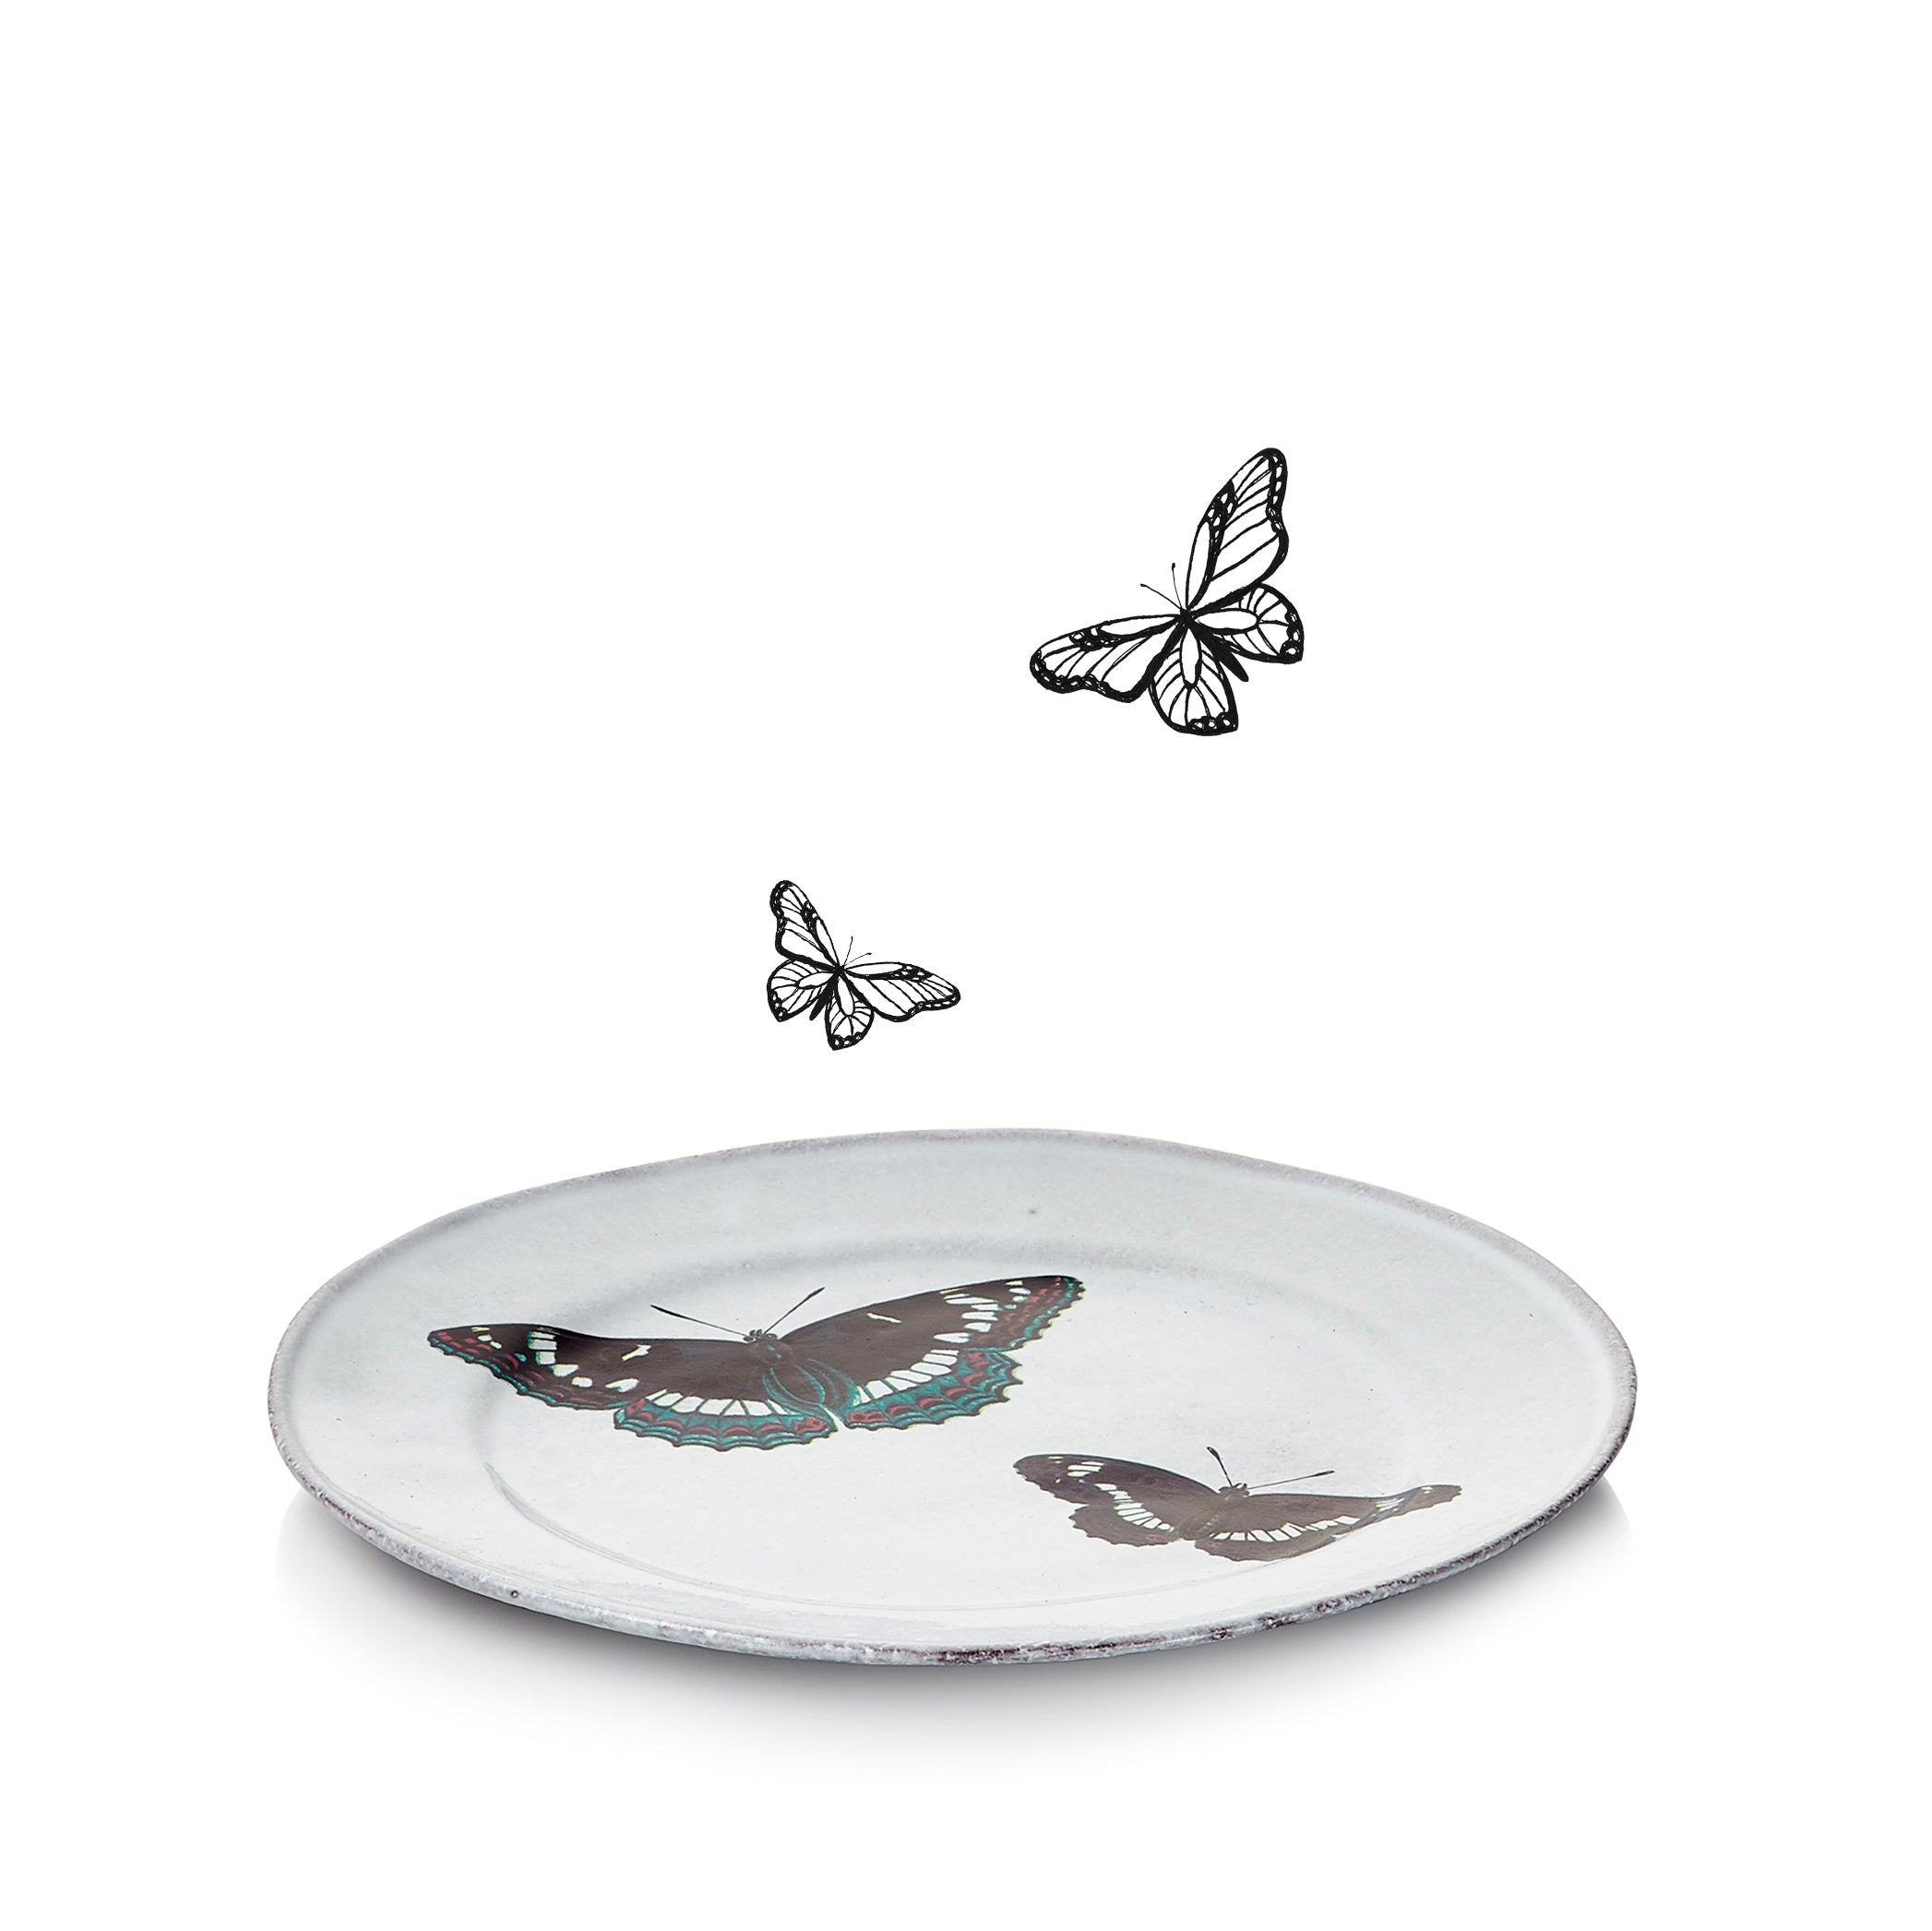 Two Flying Butterflies Plate by Astier de Villatte, 19cm